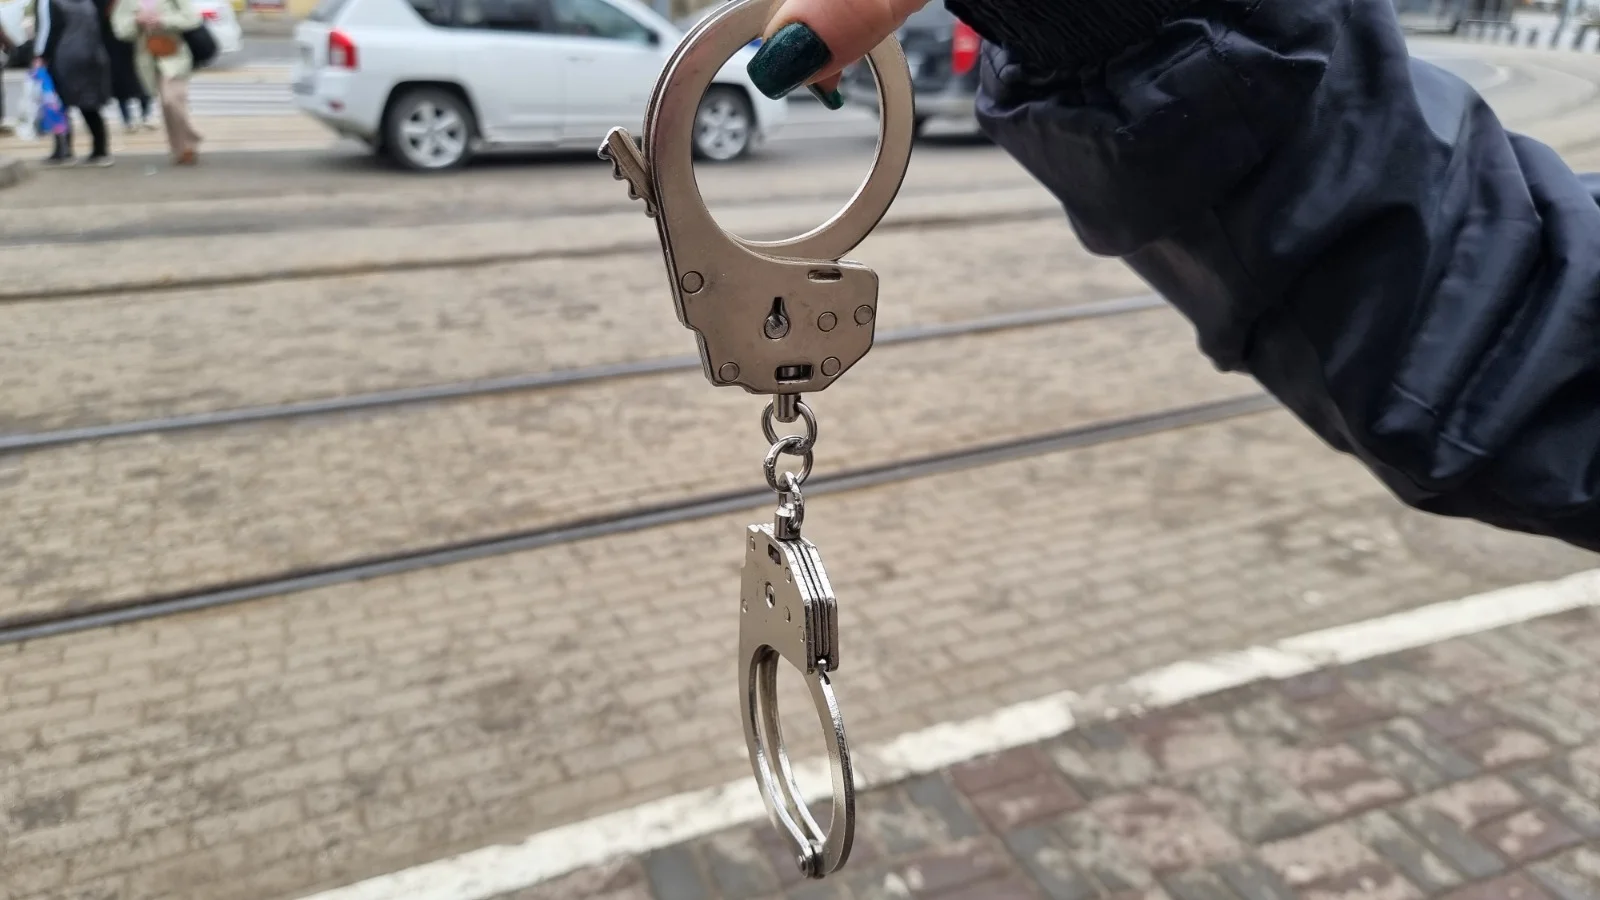 ОПГ из сотрудников банка сколотили под Ростовом чтобы скрыть кражу 22 миллионов рублей